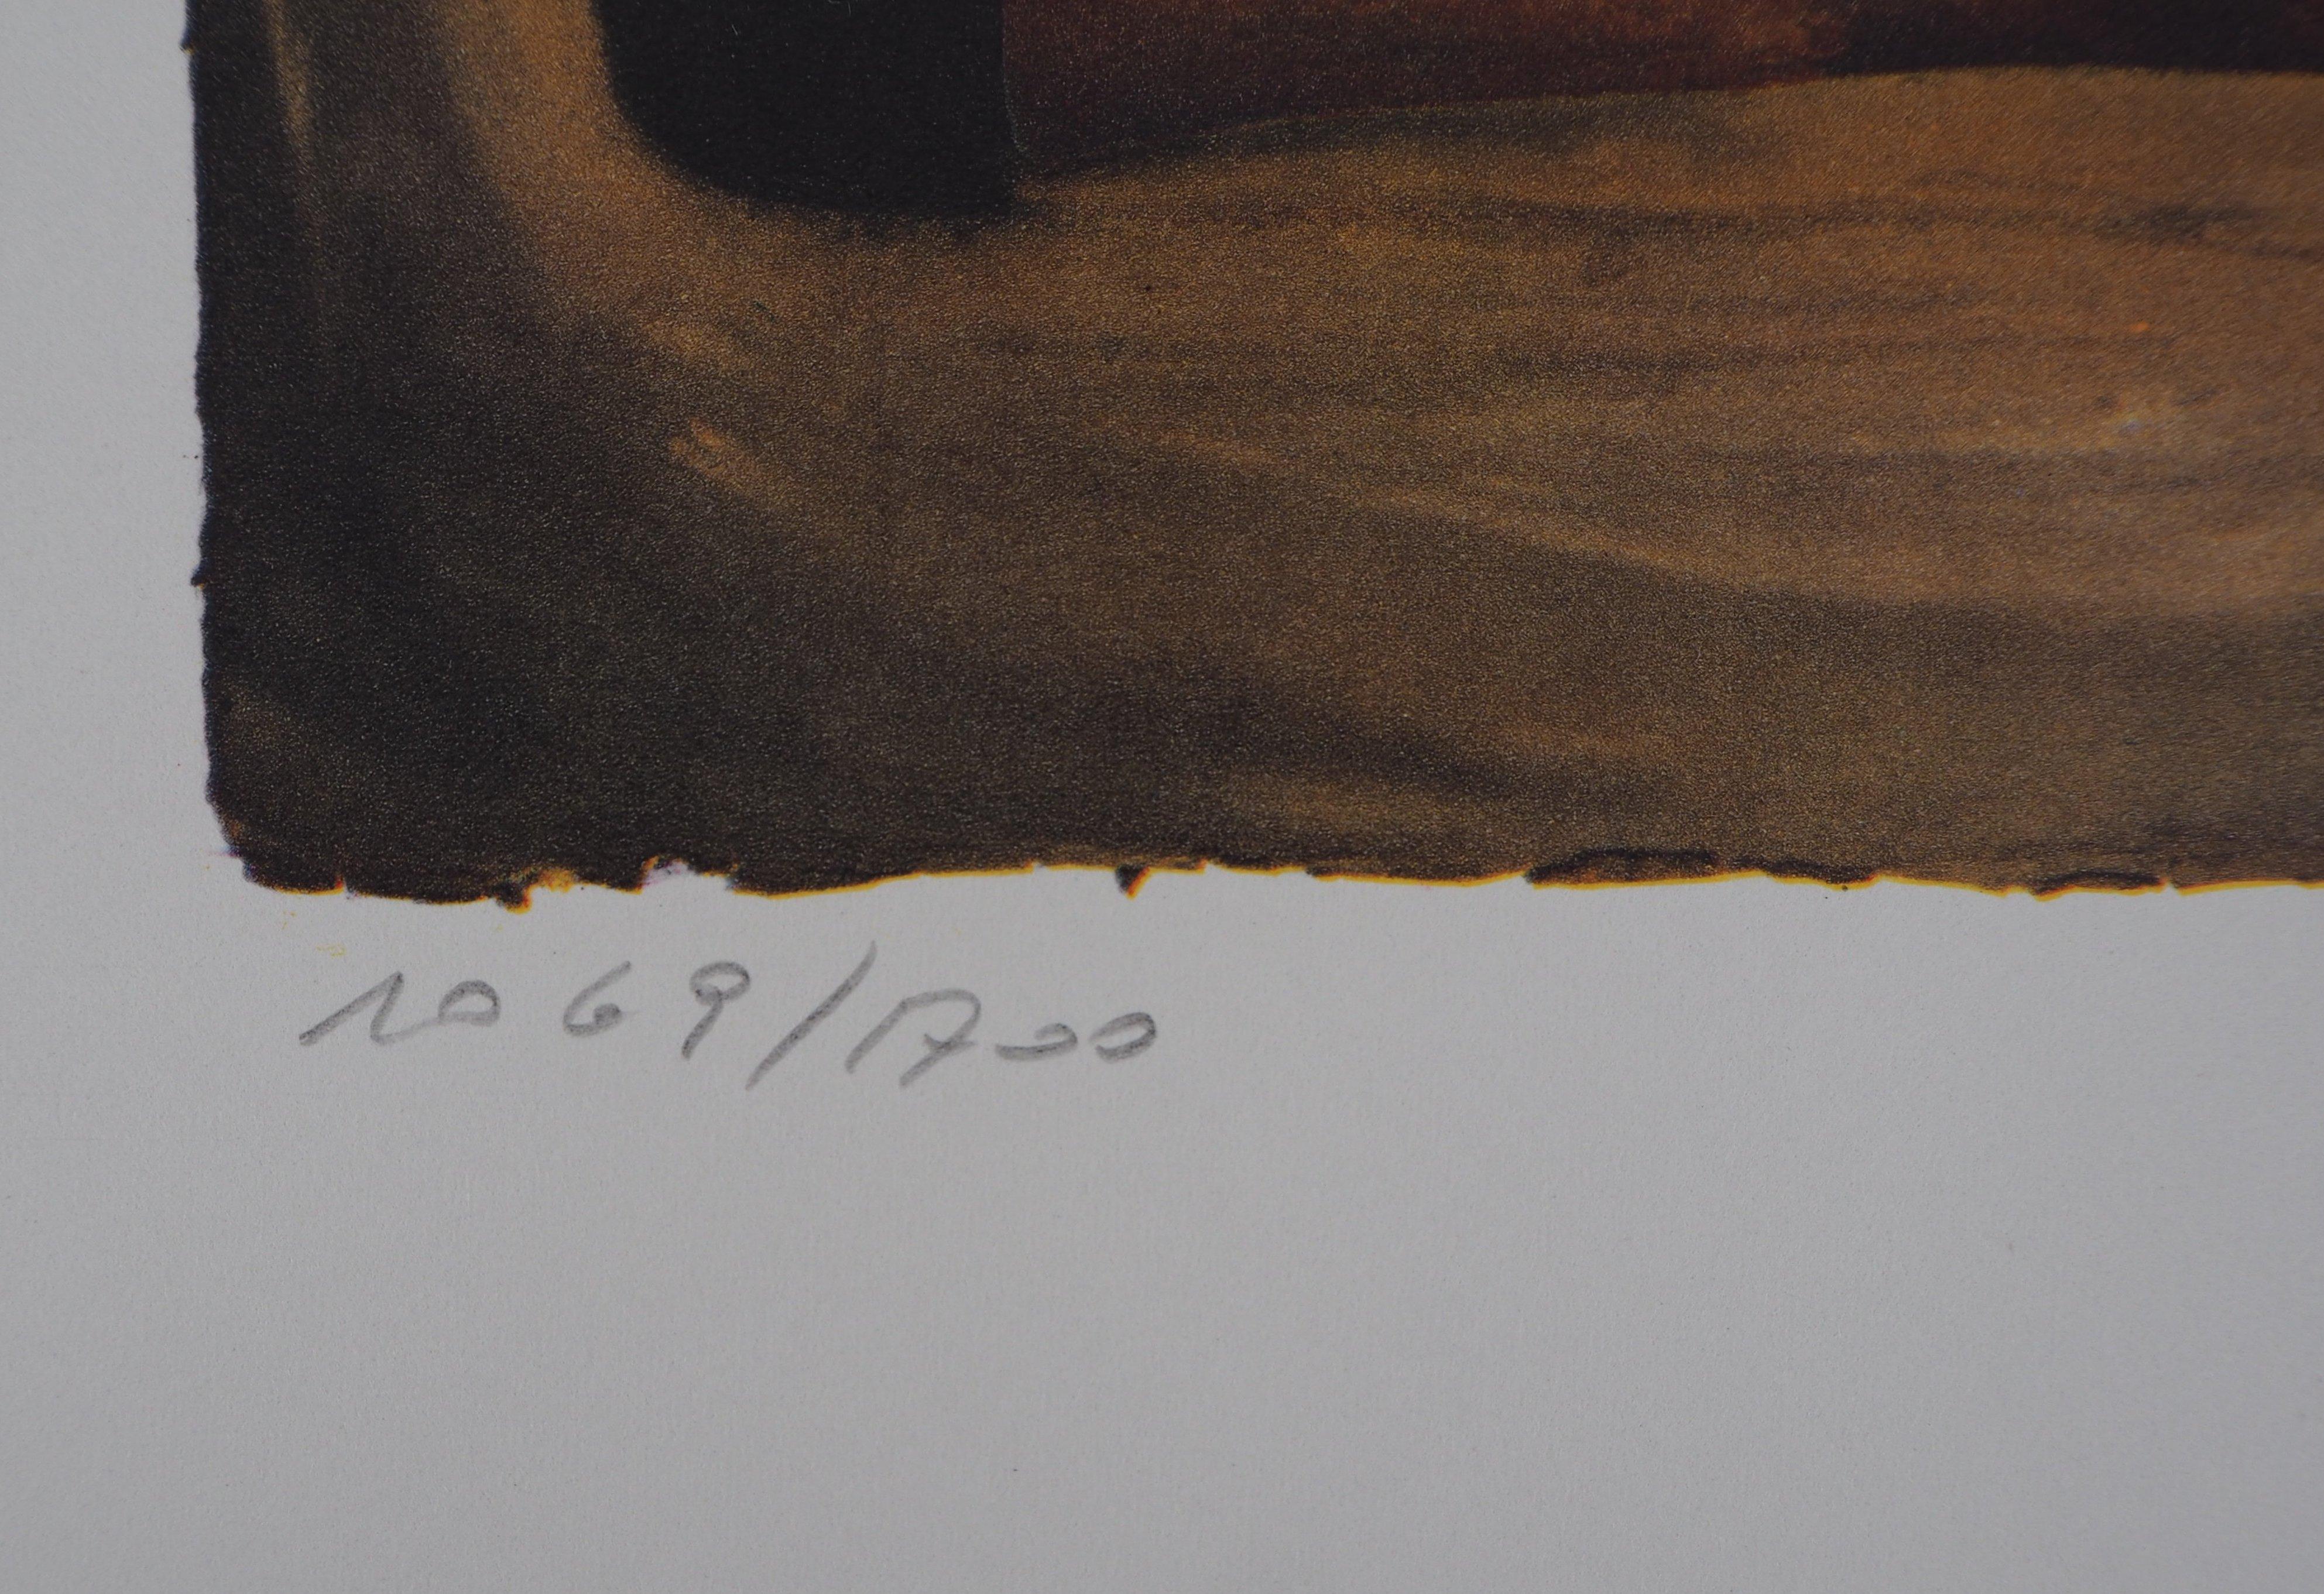 d'après Salvador DALI (1904-1969)
Suite de papillons : Normandie, 1969

Héliogravure / Photogravure d'après un dessin original de Dali
Signature à l'aveugle en bas à droite
Numéroté / 1700 exemplaires
Imprimé dans l'atelier Draeger
Sur vellum 53,5 x